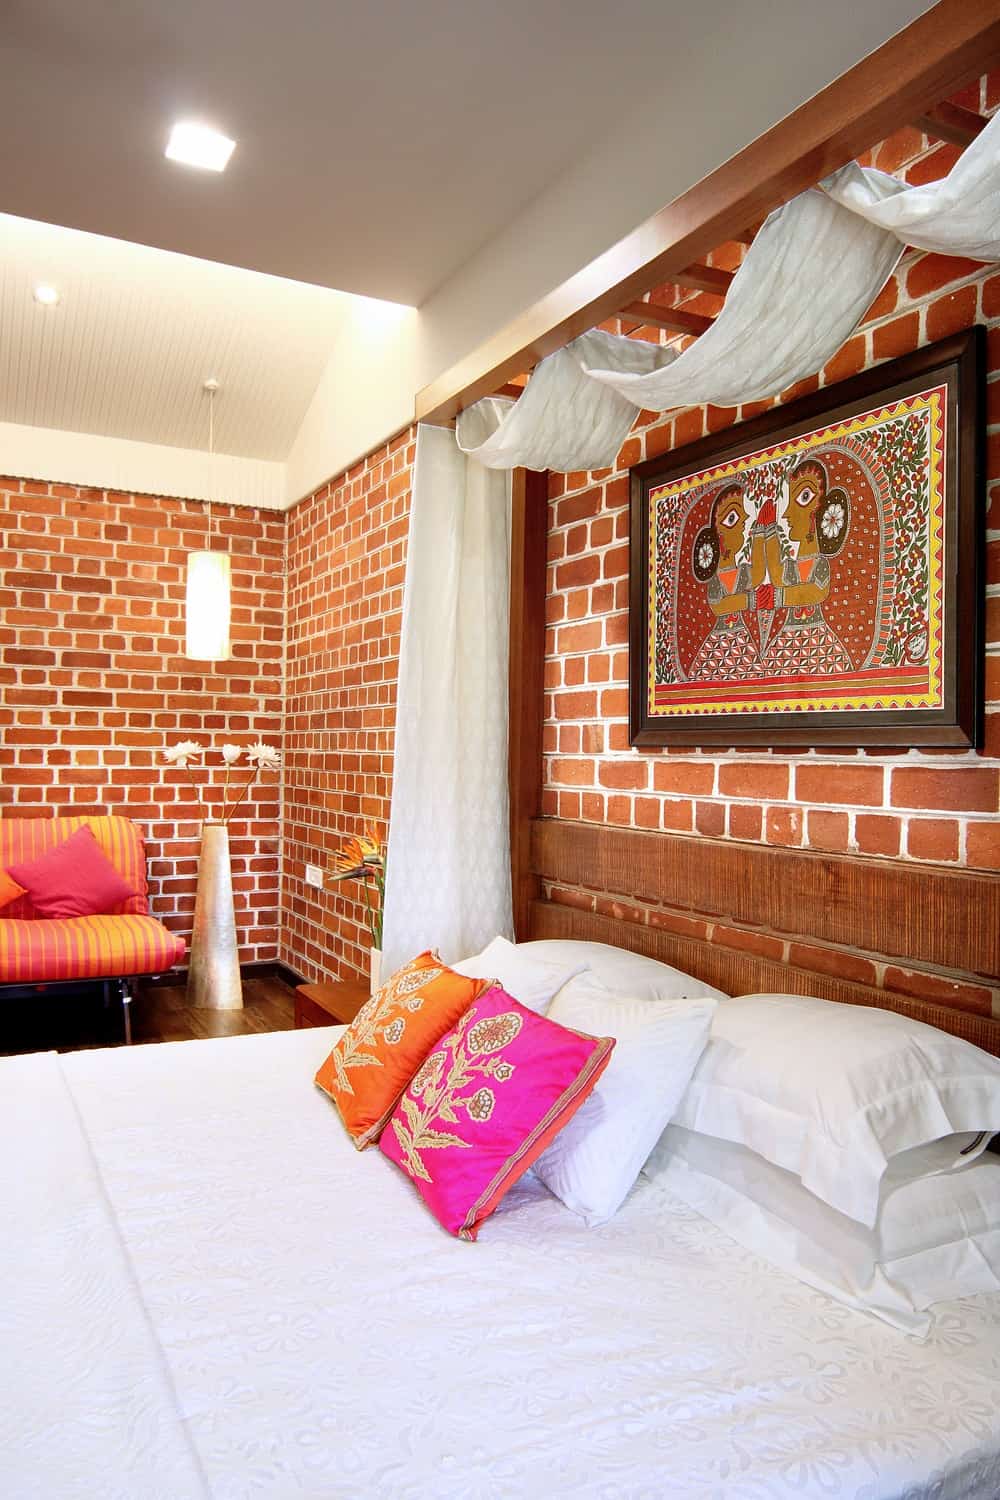 这个卧室有一个木制的床顶部有一个丰富多彩的绘画高于木床头板和坐在面积。